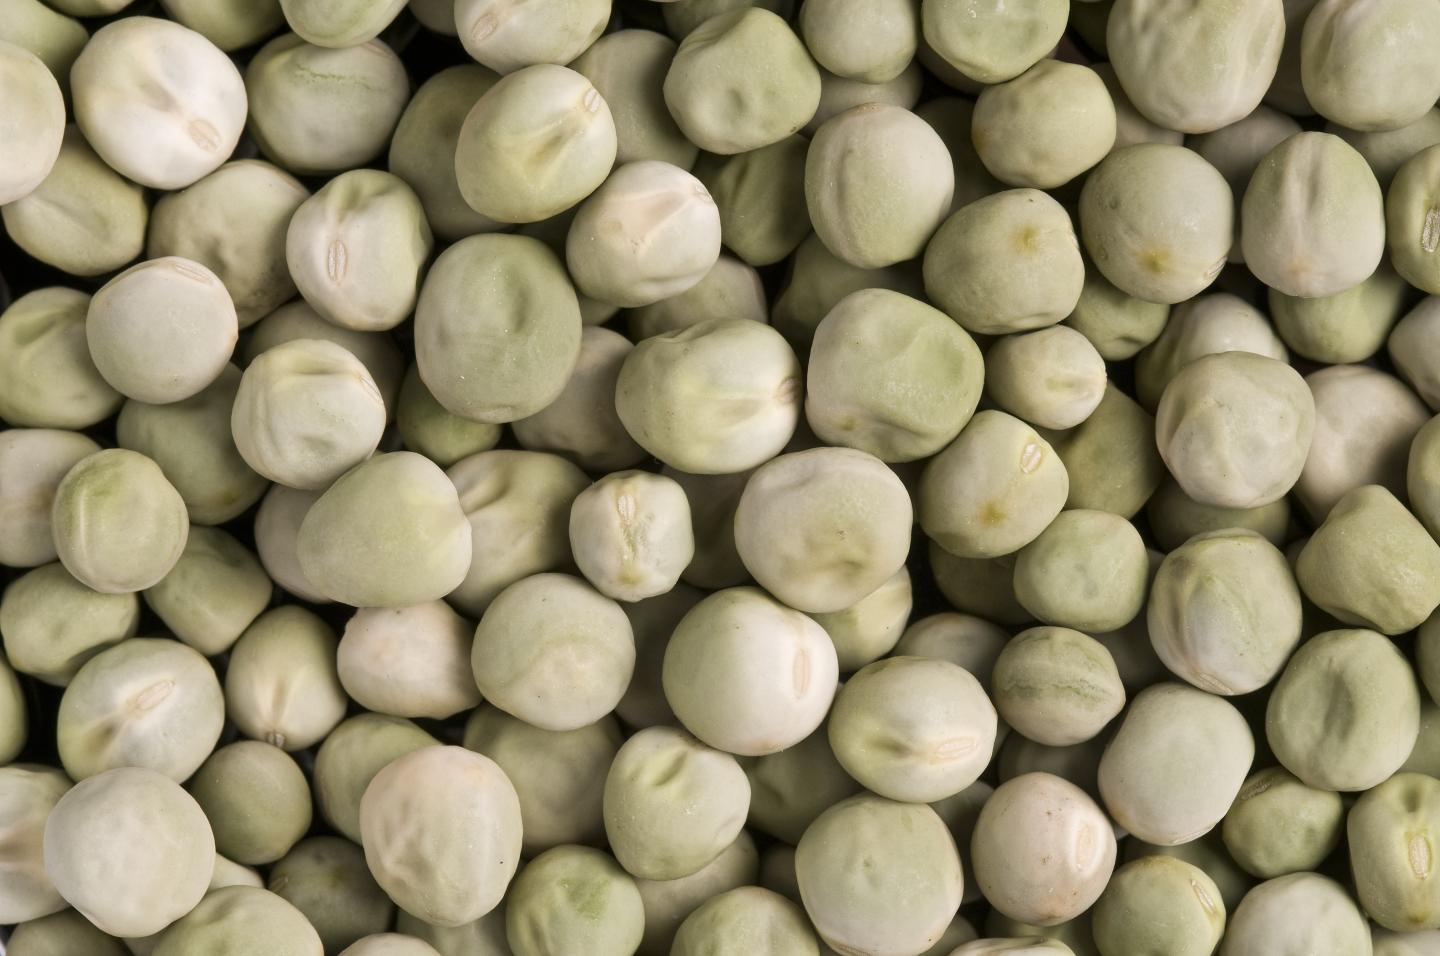 Regular (smooth) peas